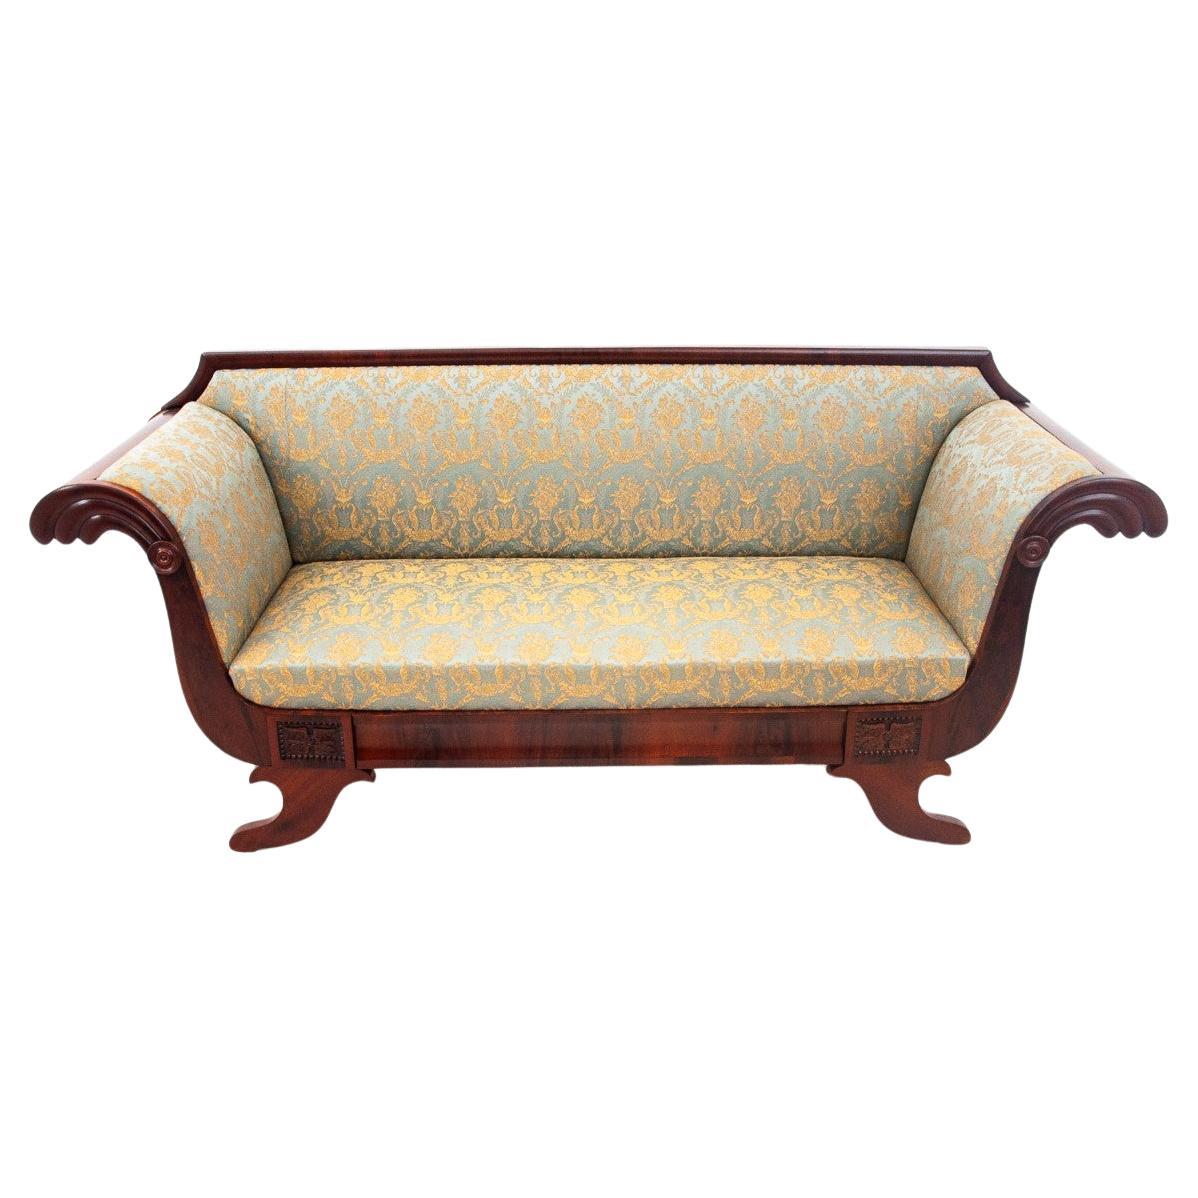 Mahogany sofa in the Biedermeier style, 19th century.